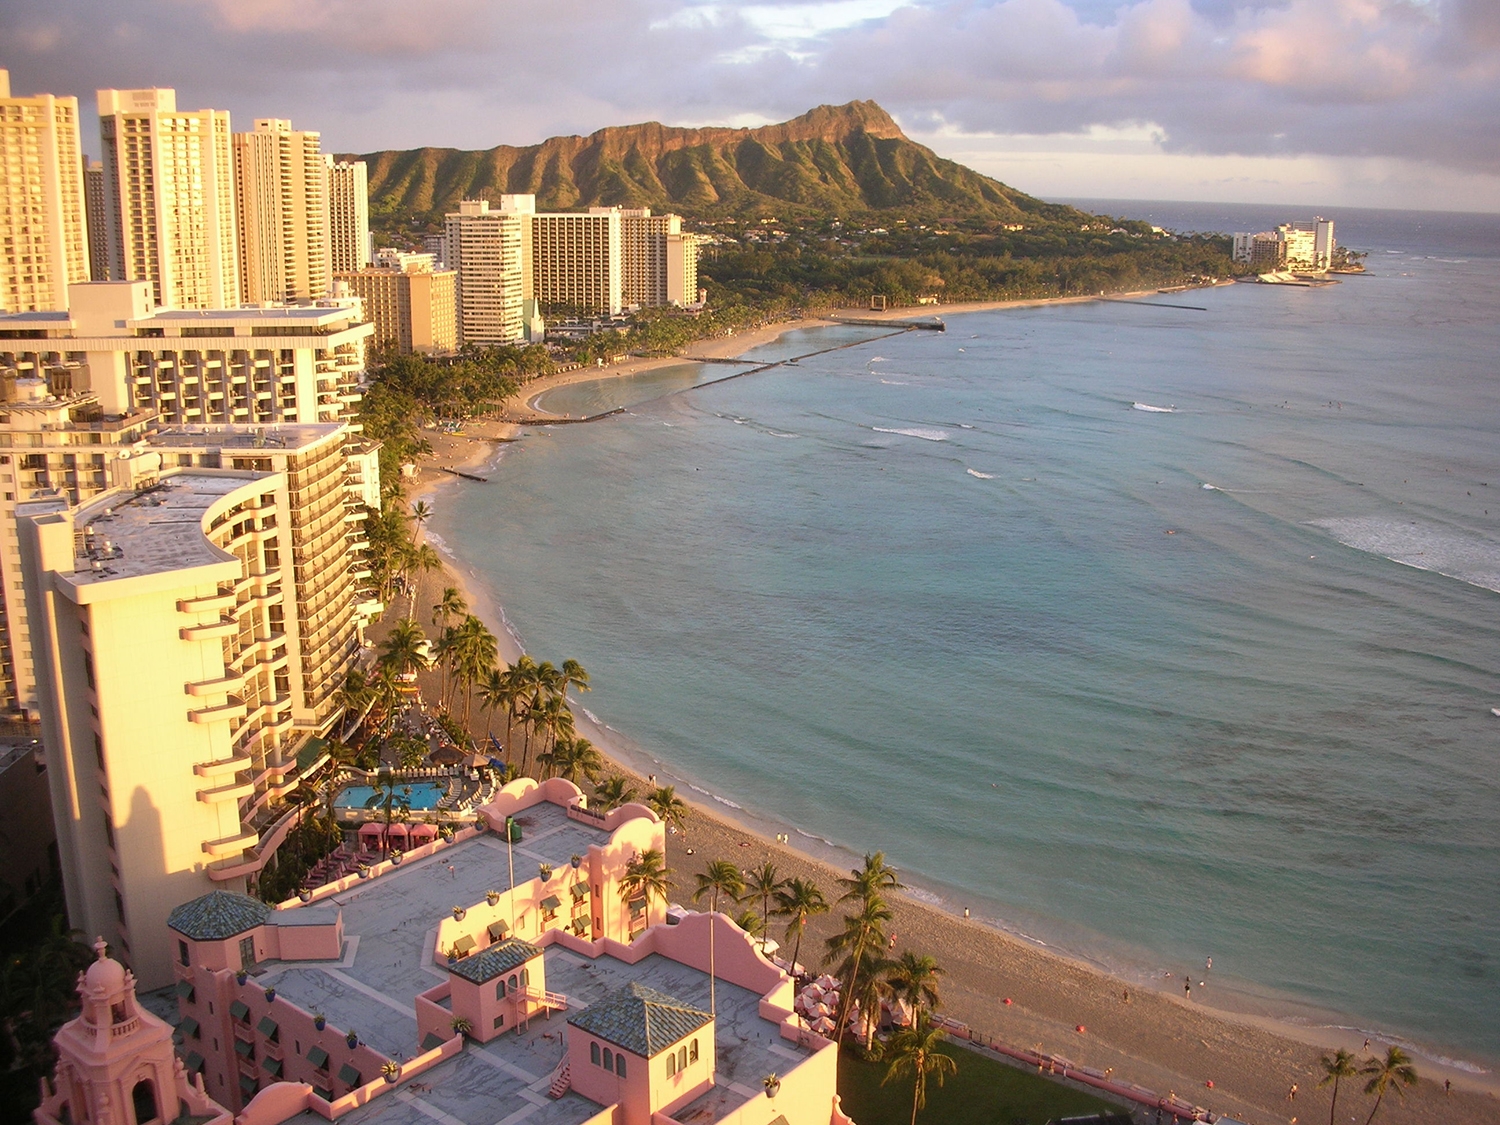 Supreme Court rejects Kyo-ya’s bid to build new Waikiki hotel